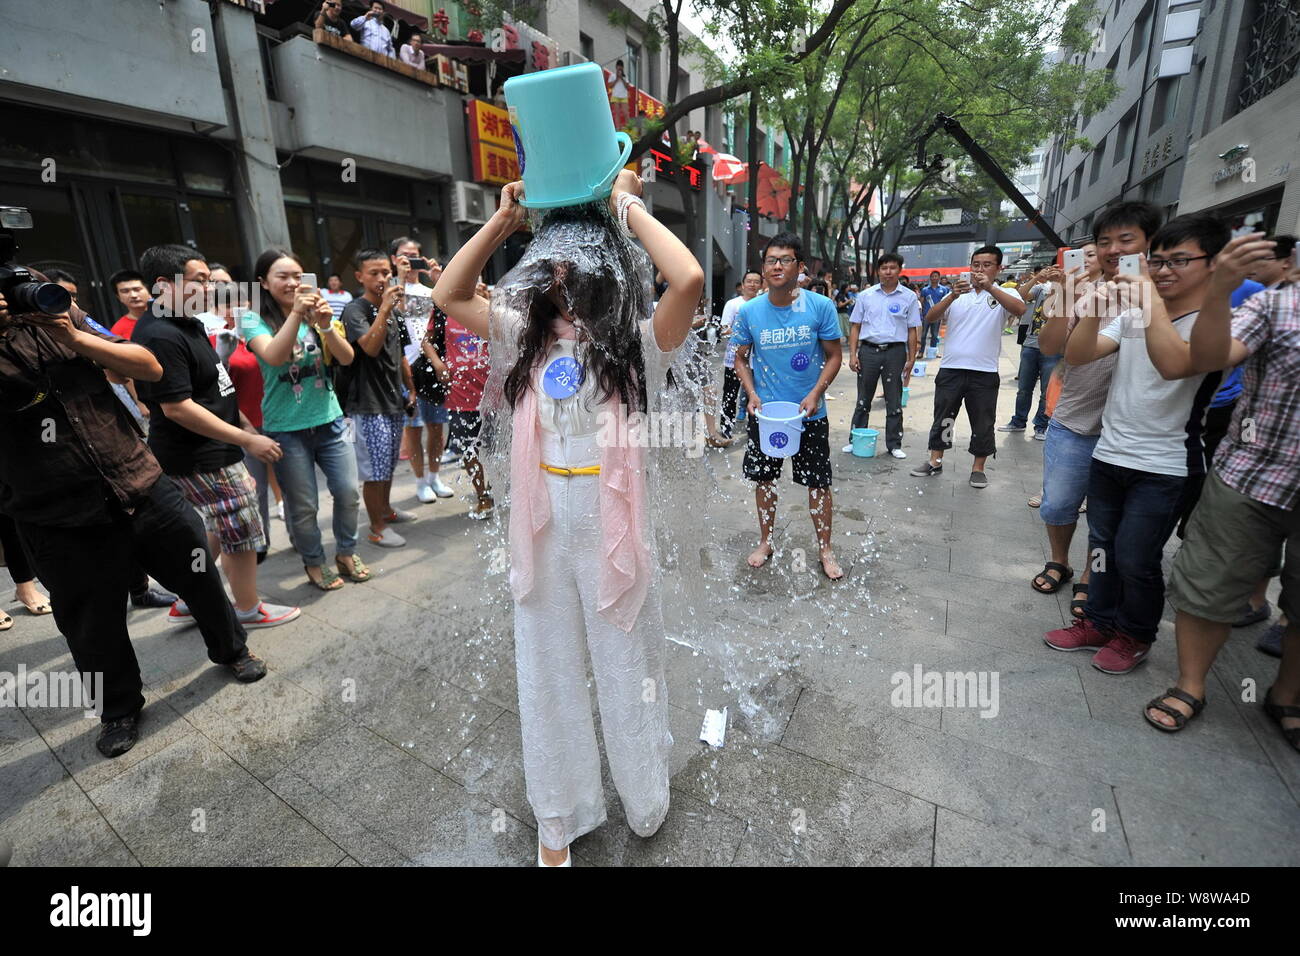 Junge Leute richten entlang einer Straße den Eimer für das Eis Herausforderung in Zhongguancun, tapfer, auch als China's Silicon Valley, in Peking, China, 21. August bekannt Stockfoto